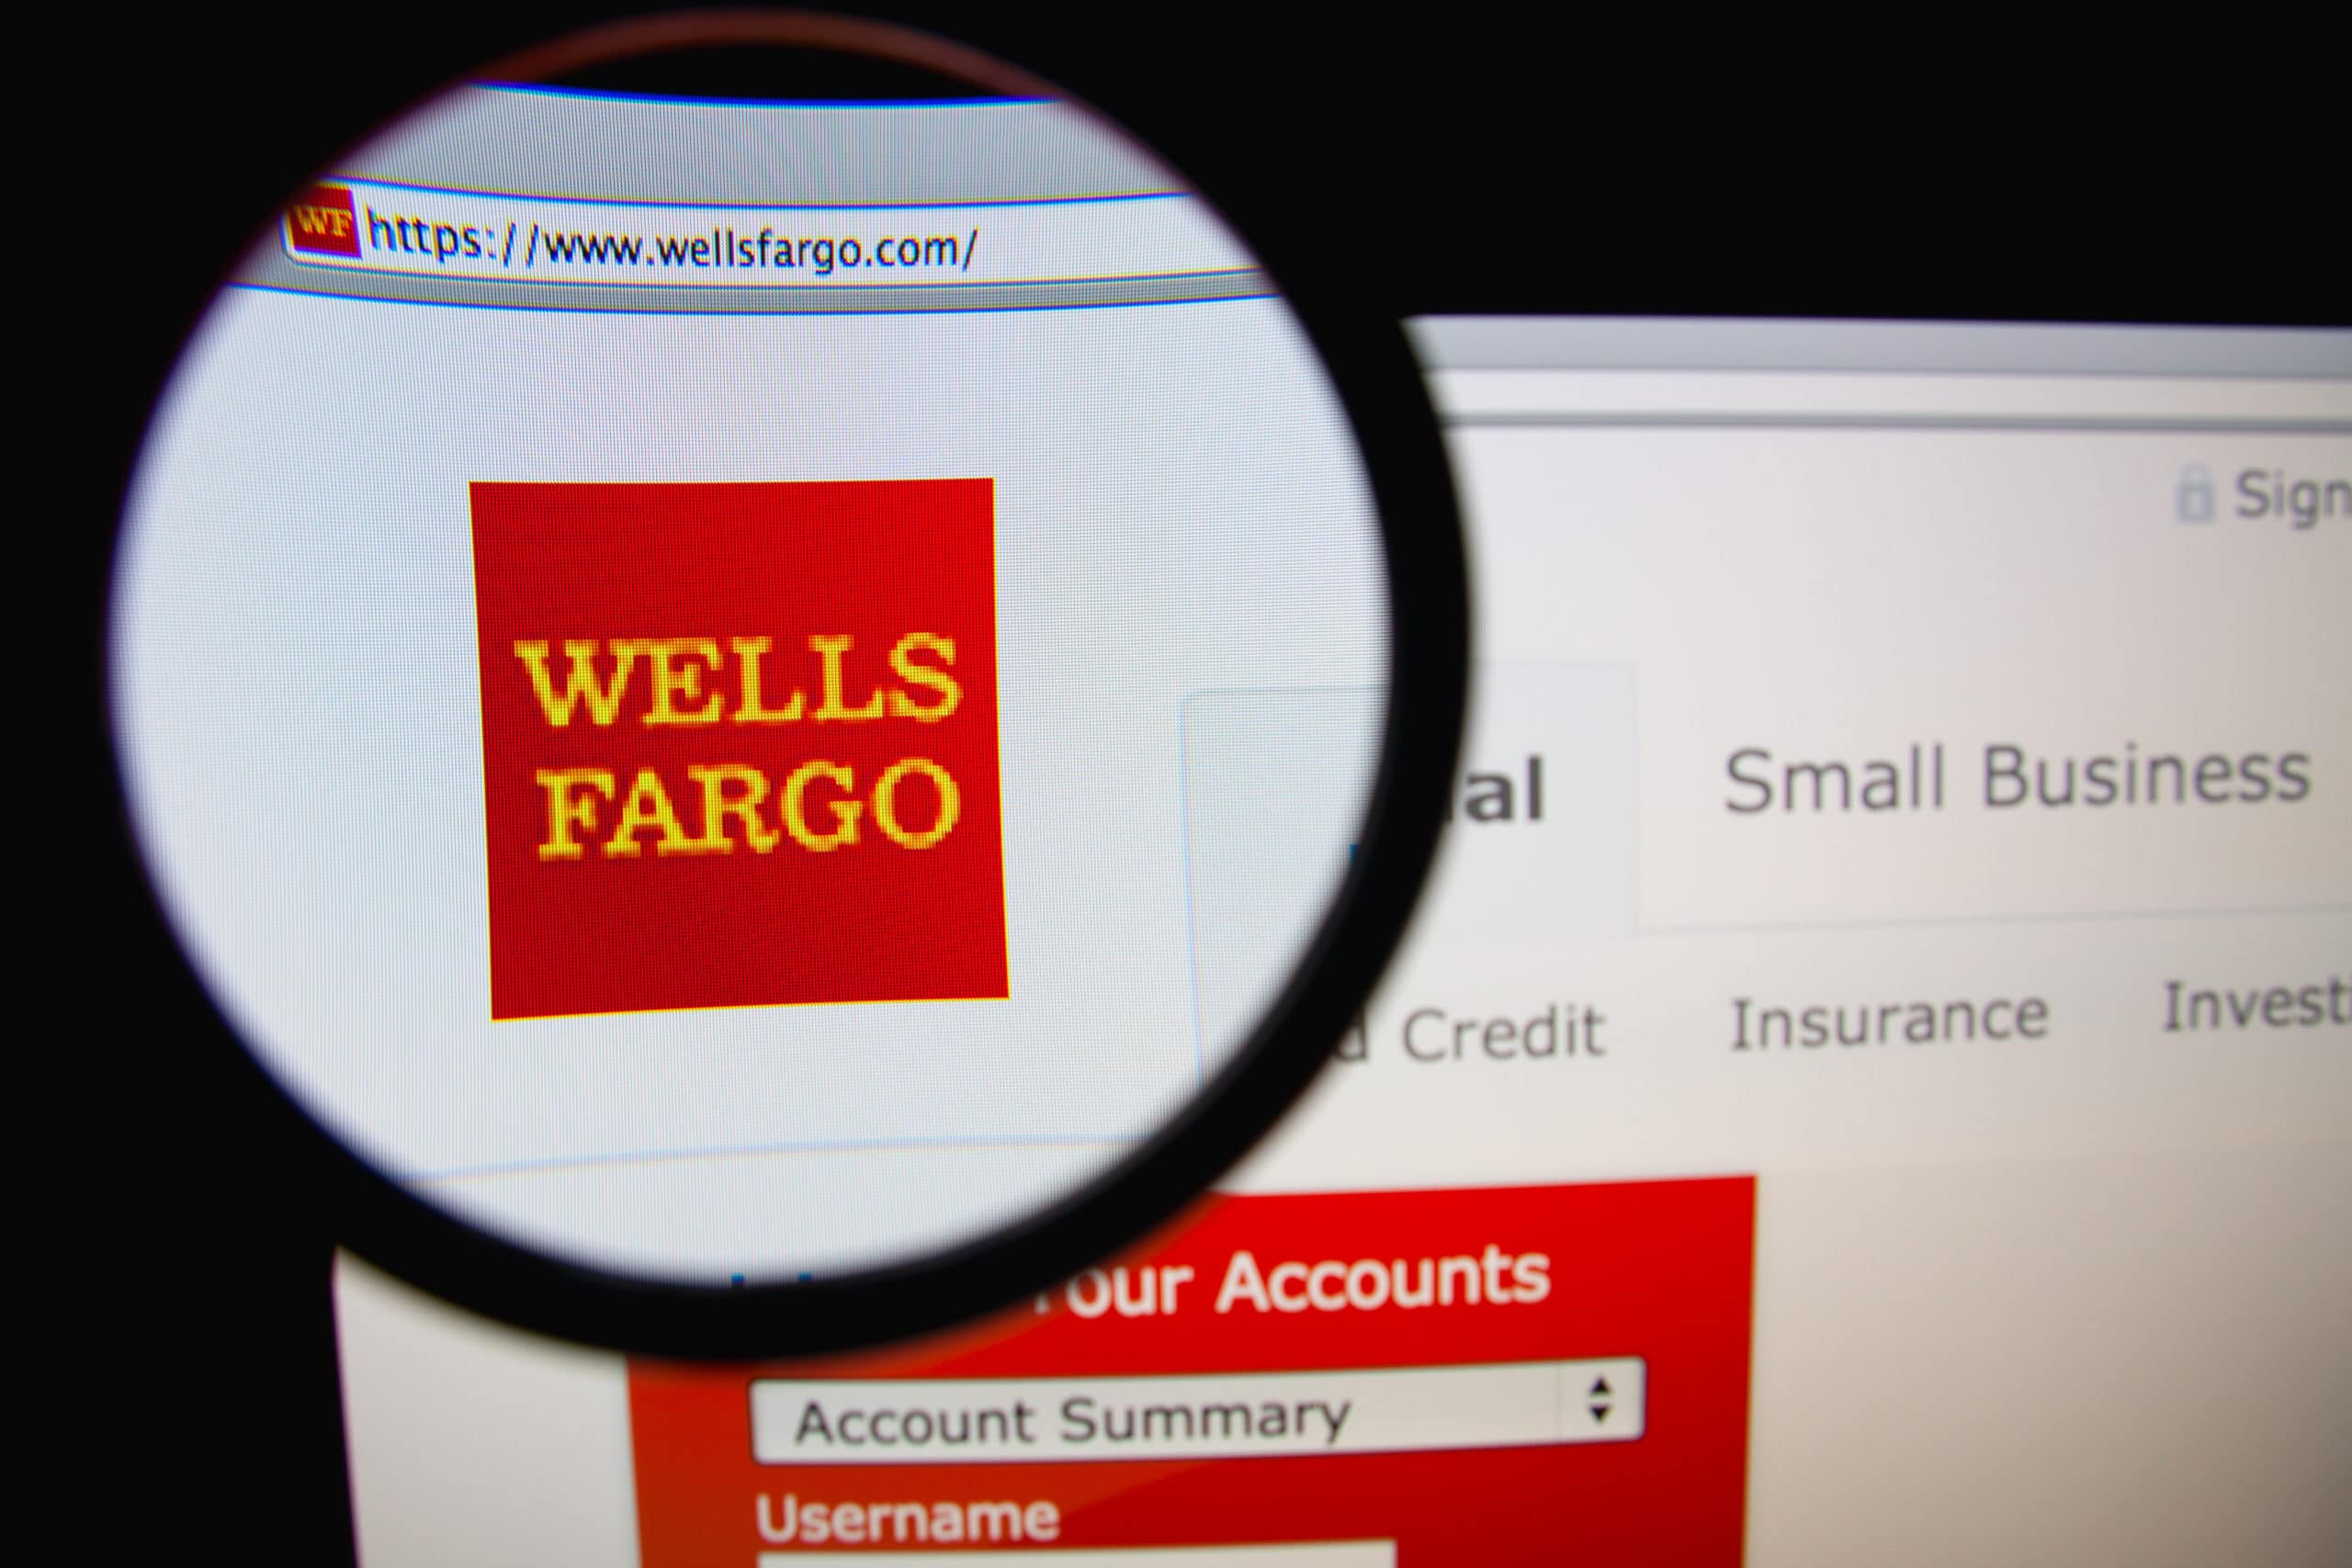 wells fargo bank review